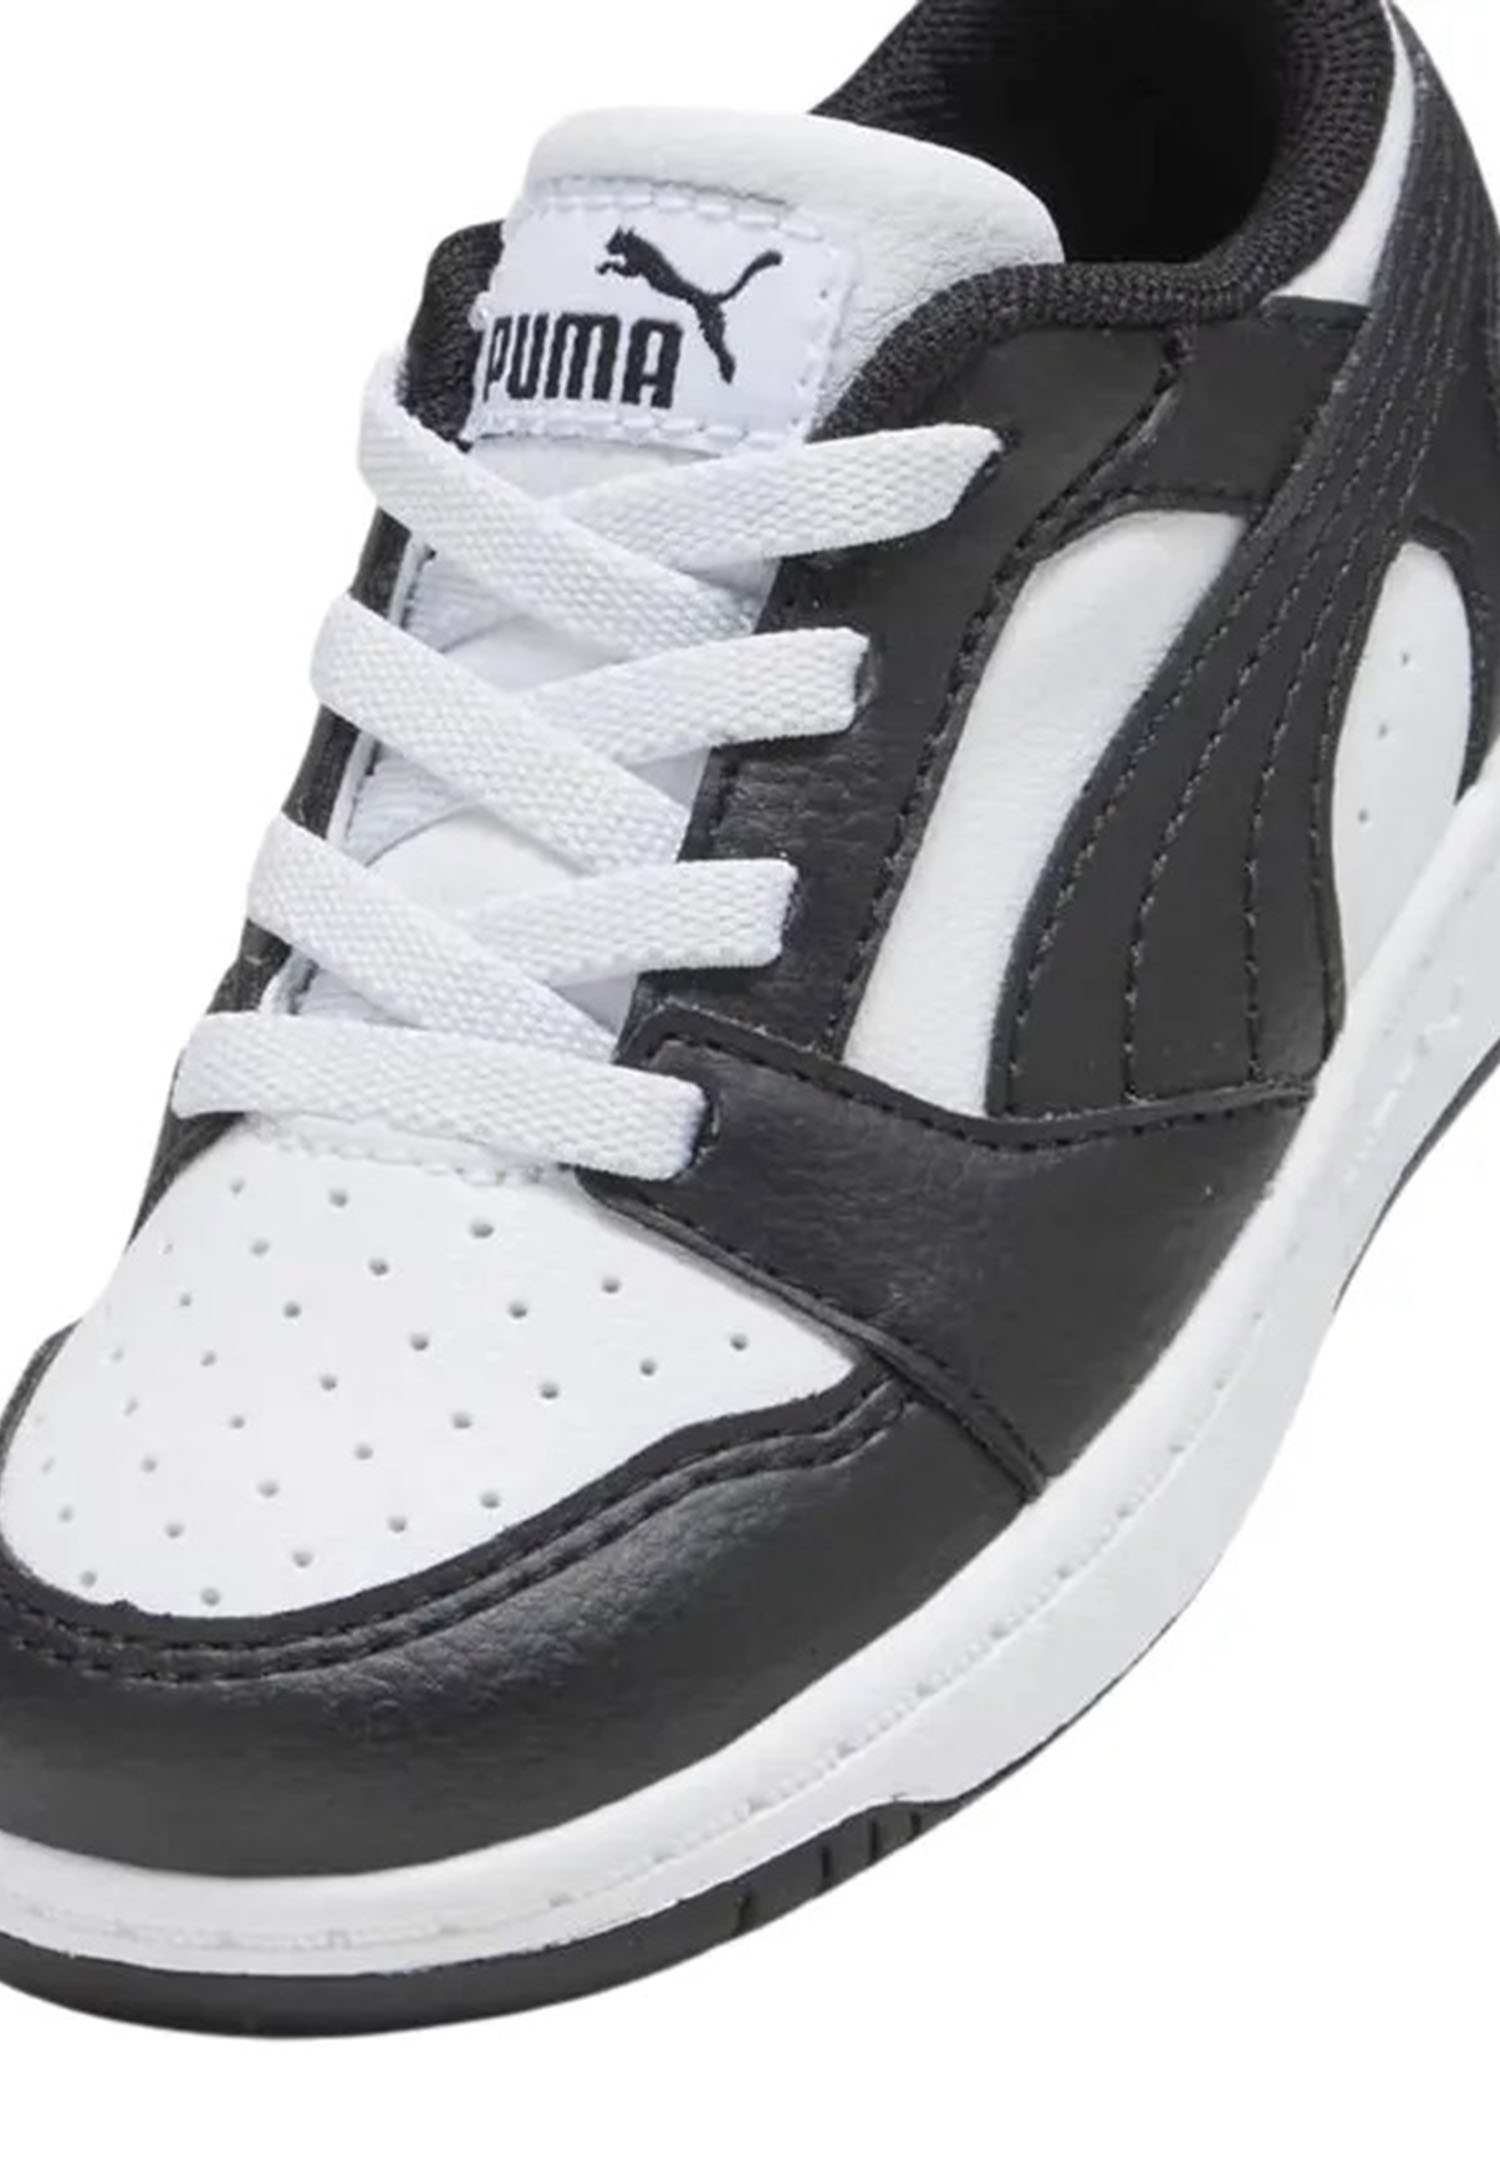 Puma Rebound V6 Lo AC PS Unisex Kinder Sneaker 396742 01 weiß/schwarz